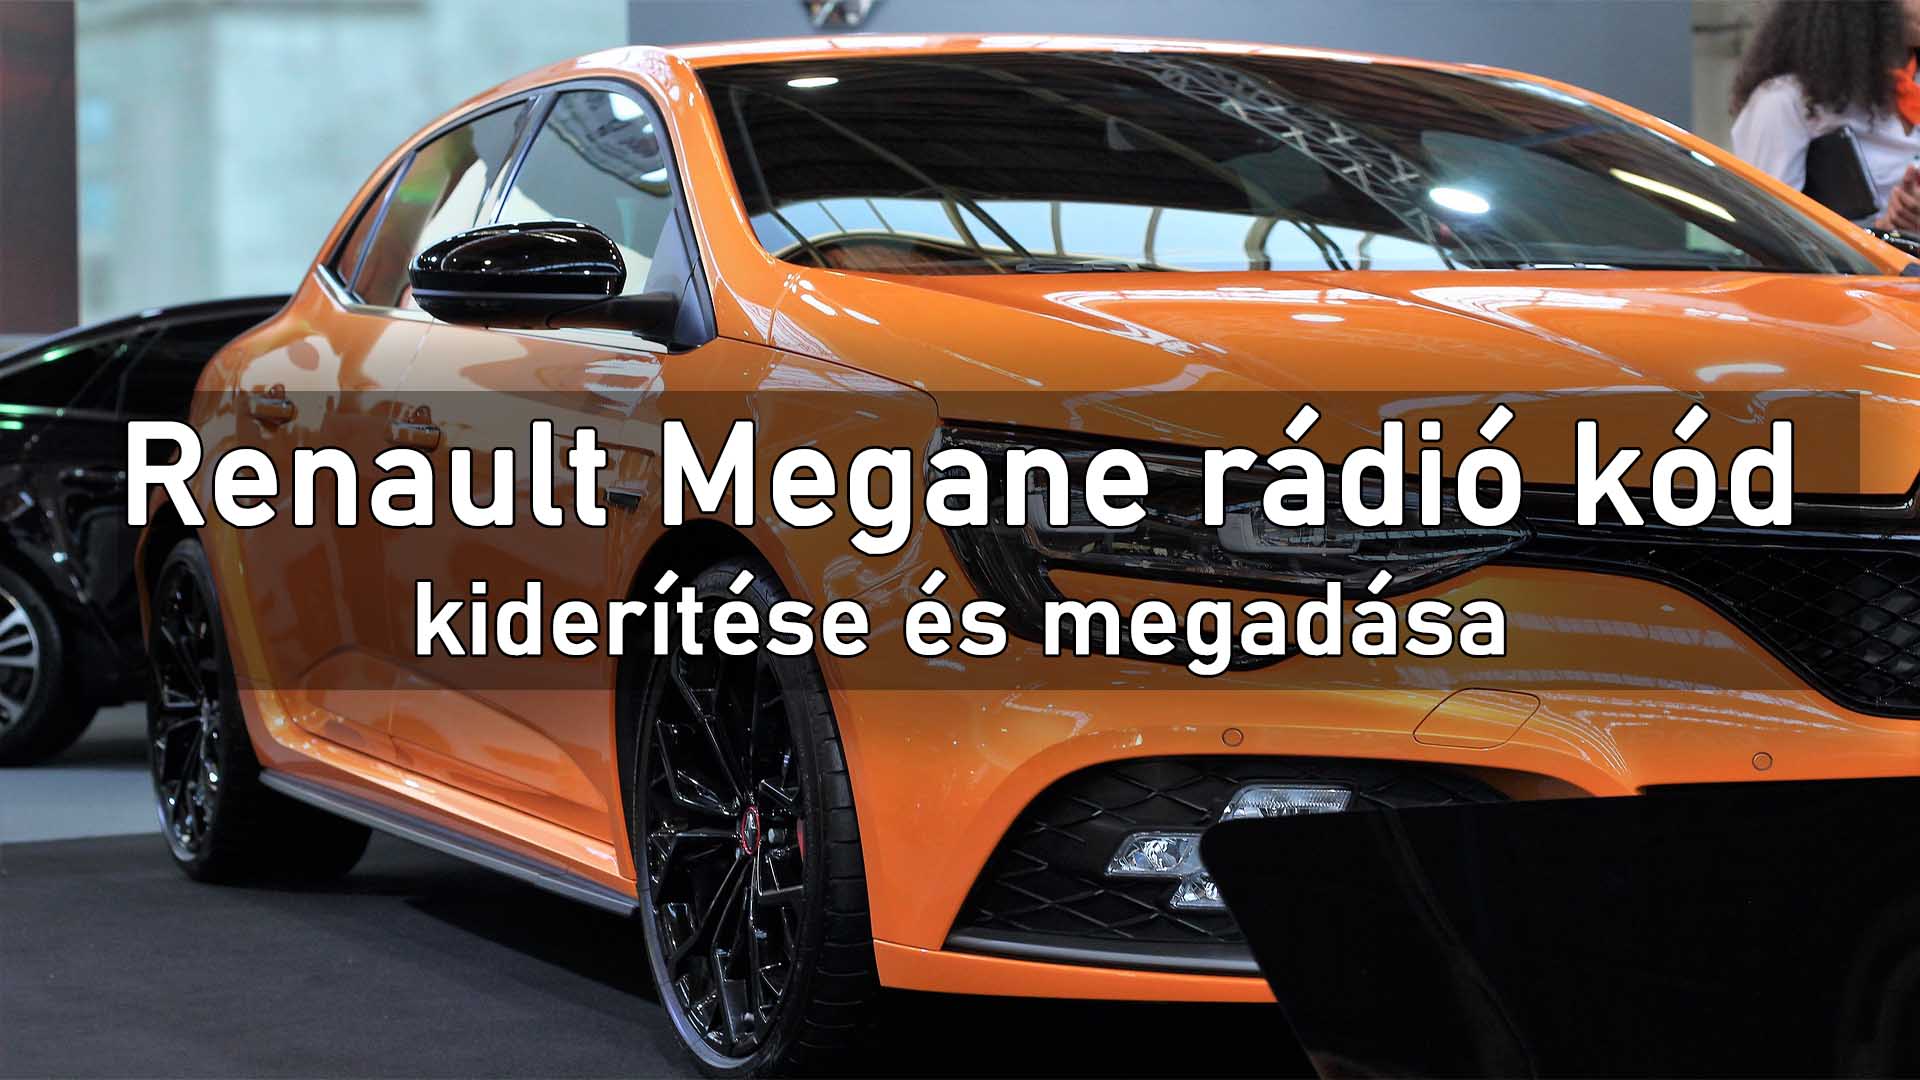 Renault Megane rádió kód kiderítése és megadása című cikk boritóképe